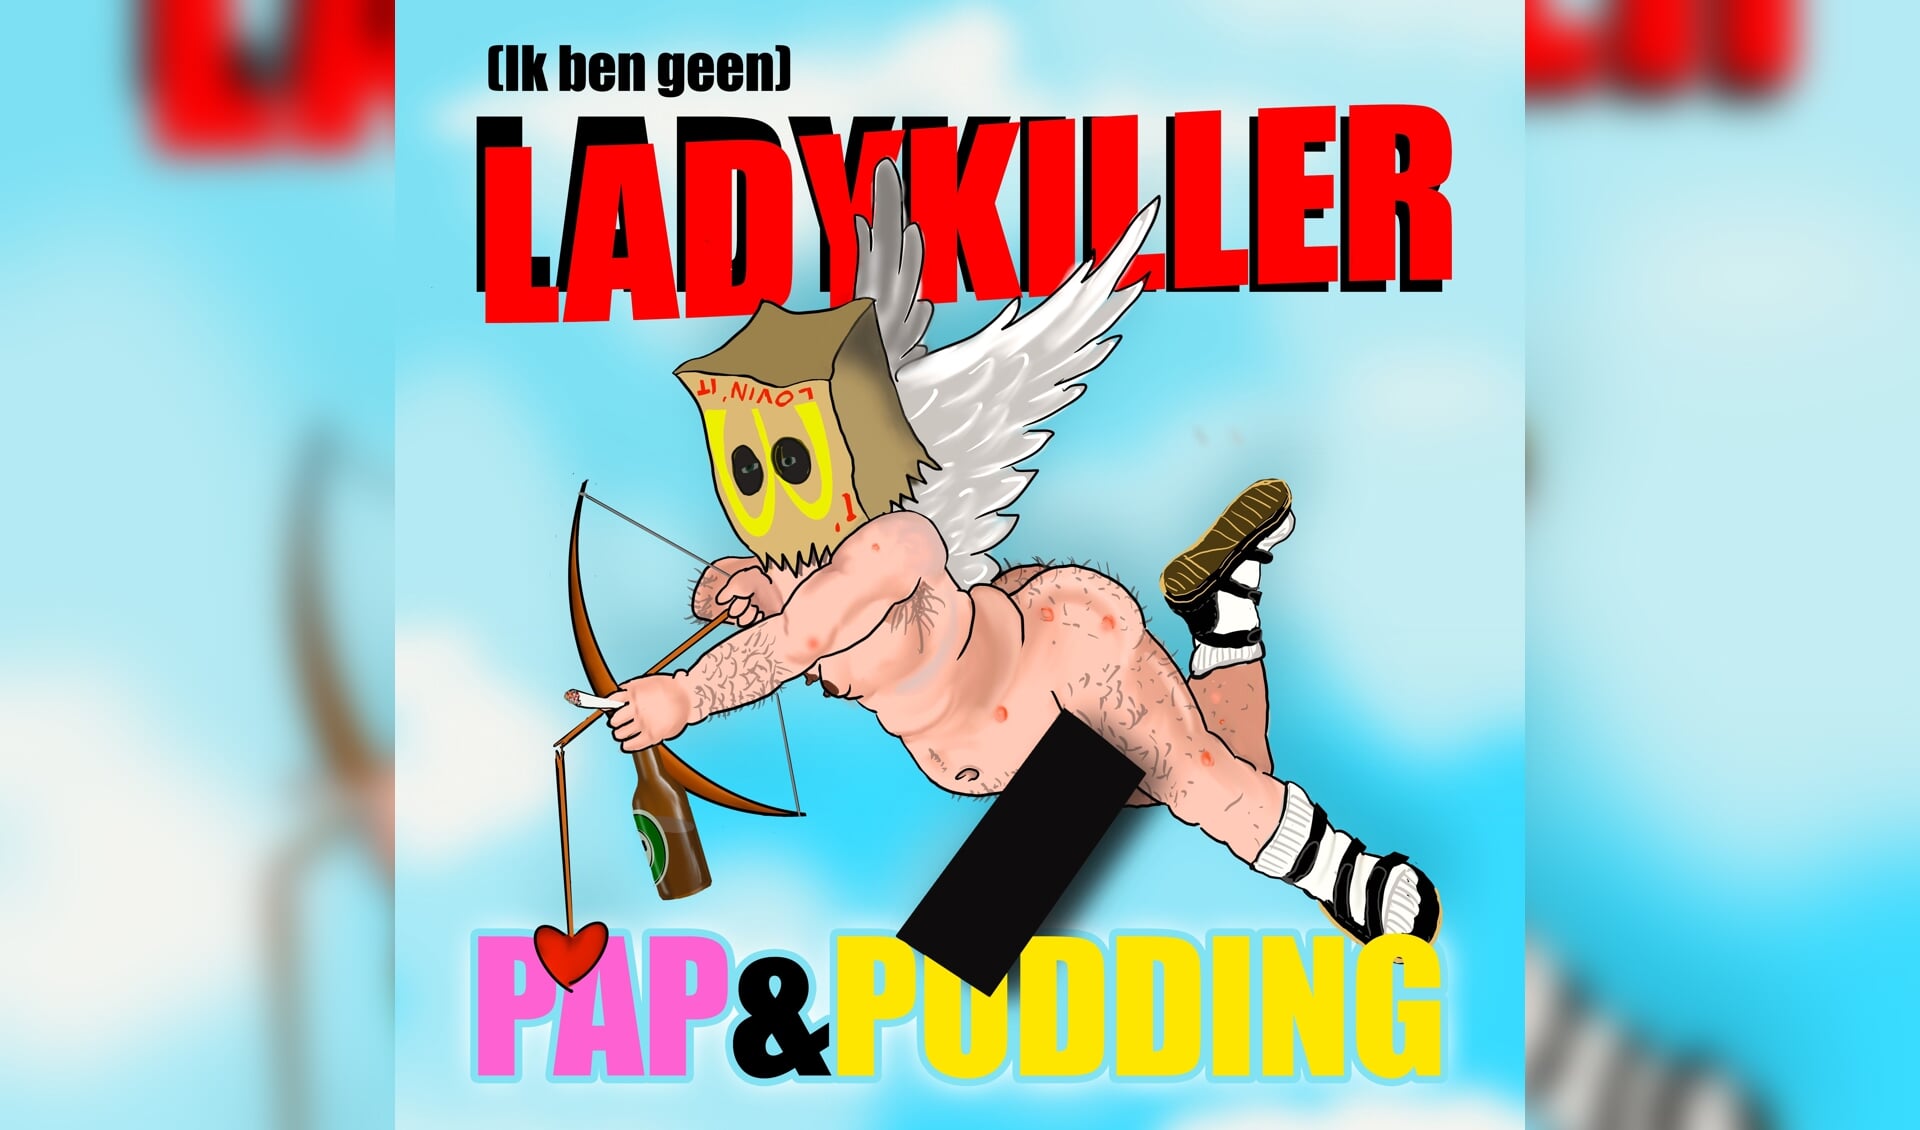 (Ik ben geen)Ladykiller van Pap & Pudding.